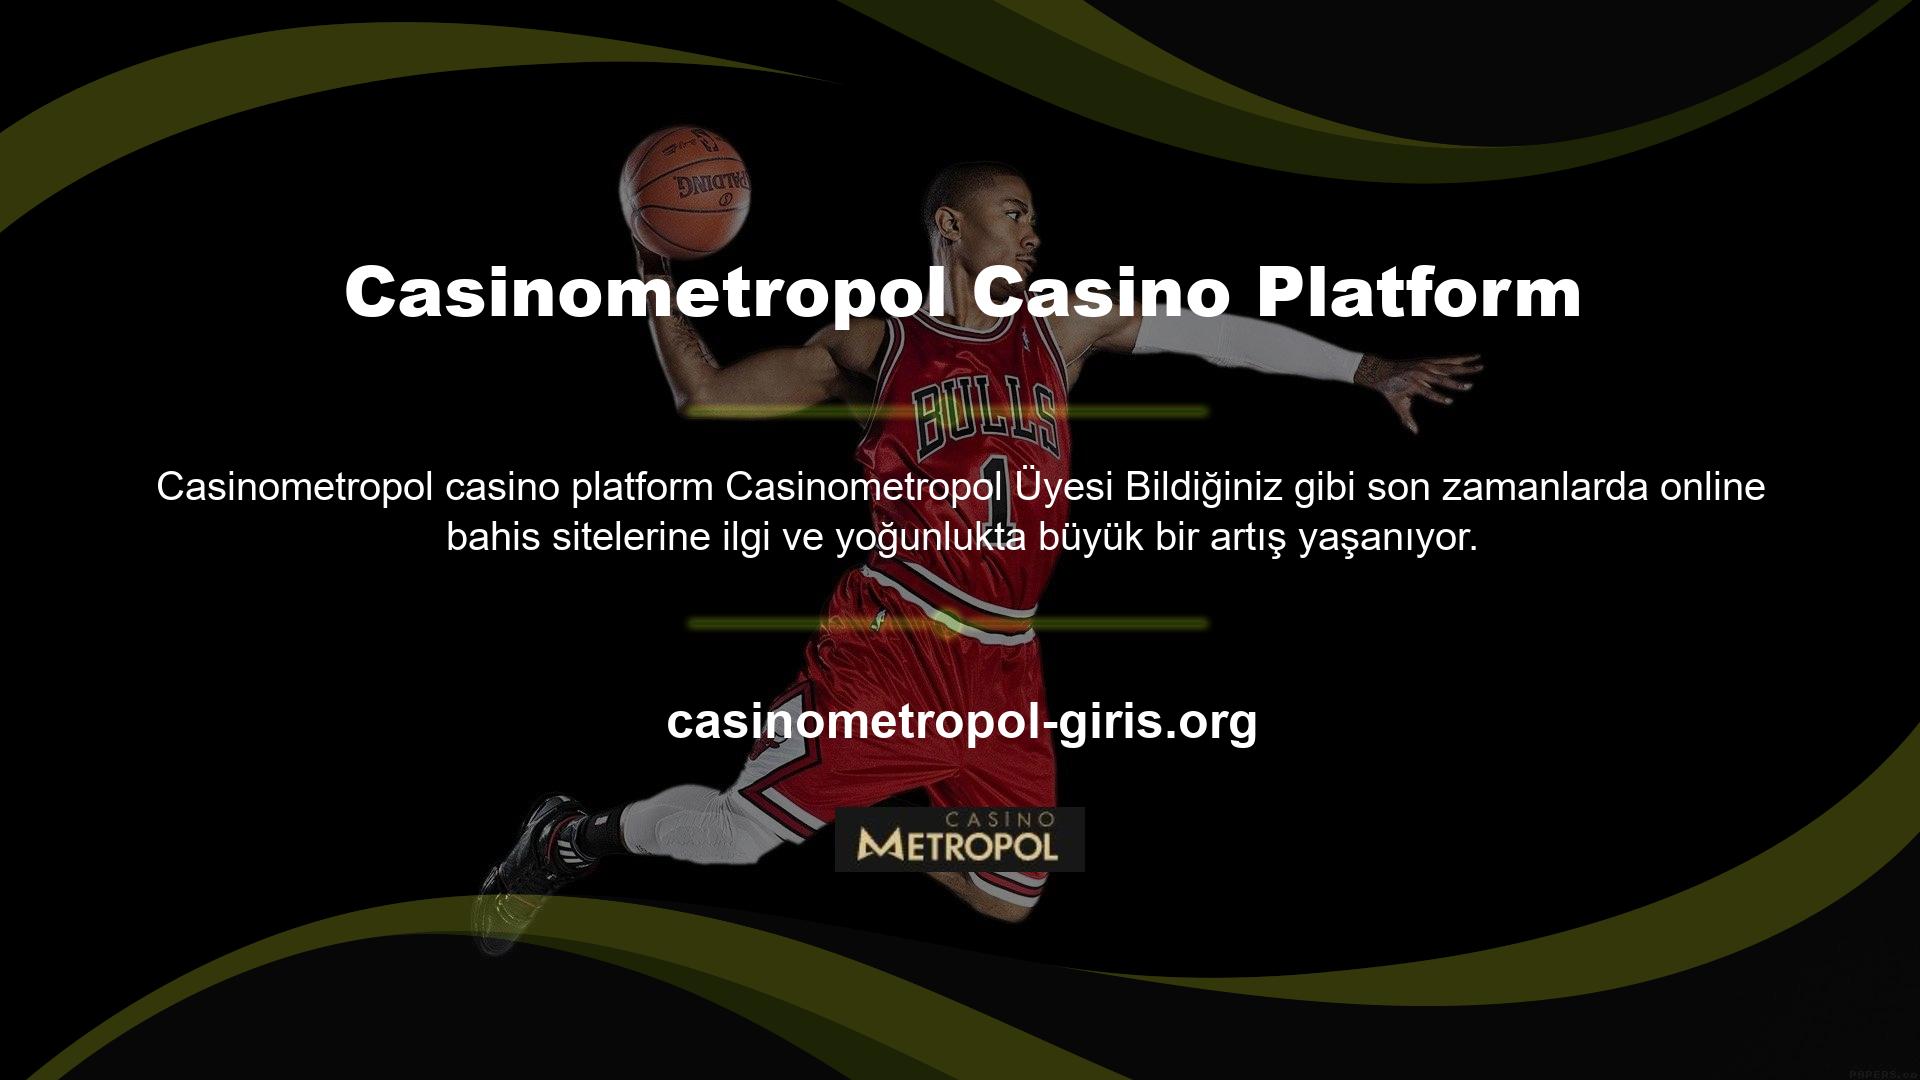 Bu amaçla internet üzerinde birçok çevrim içi casino sitesi ve çevrim içi casino platformu oluşturulmuş ve işletilmektedir